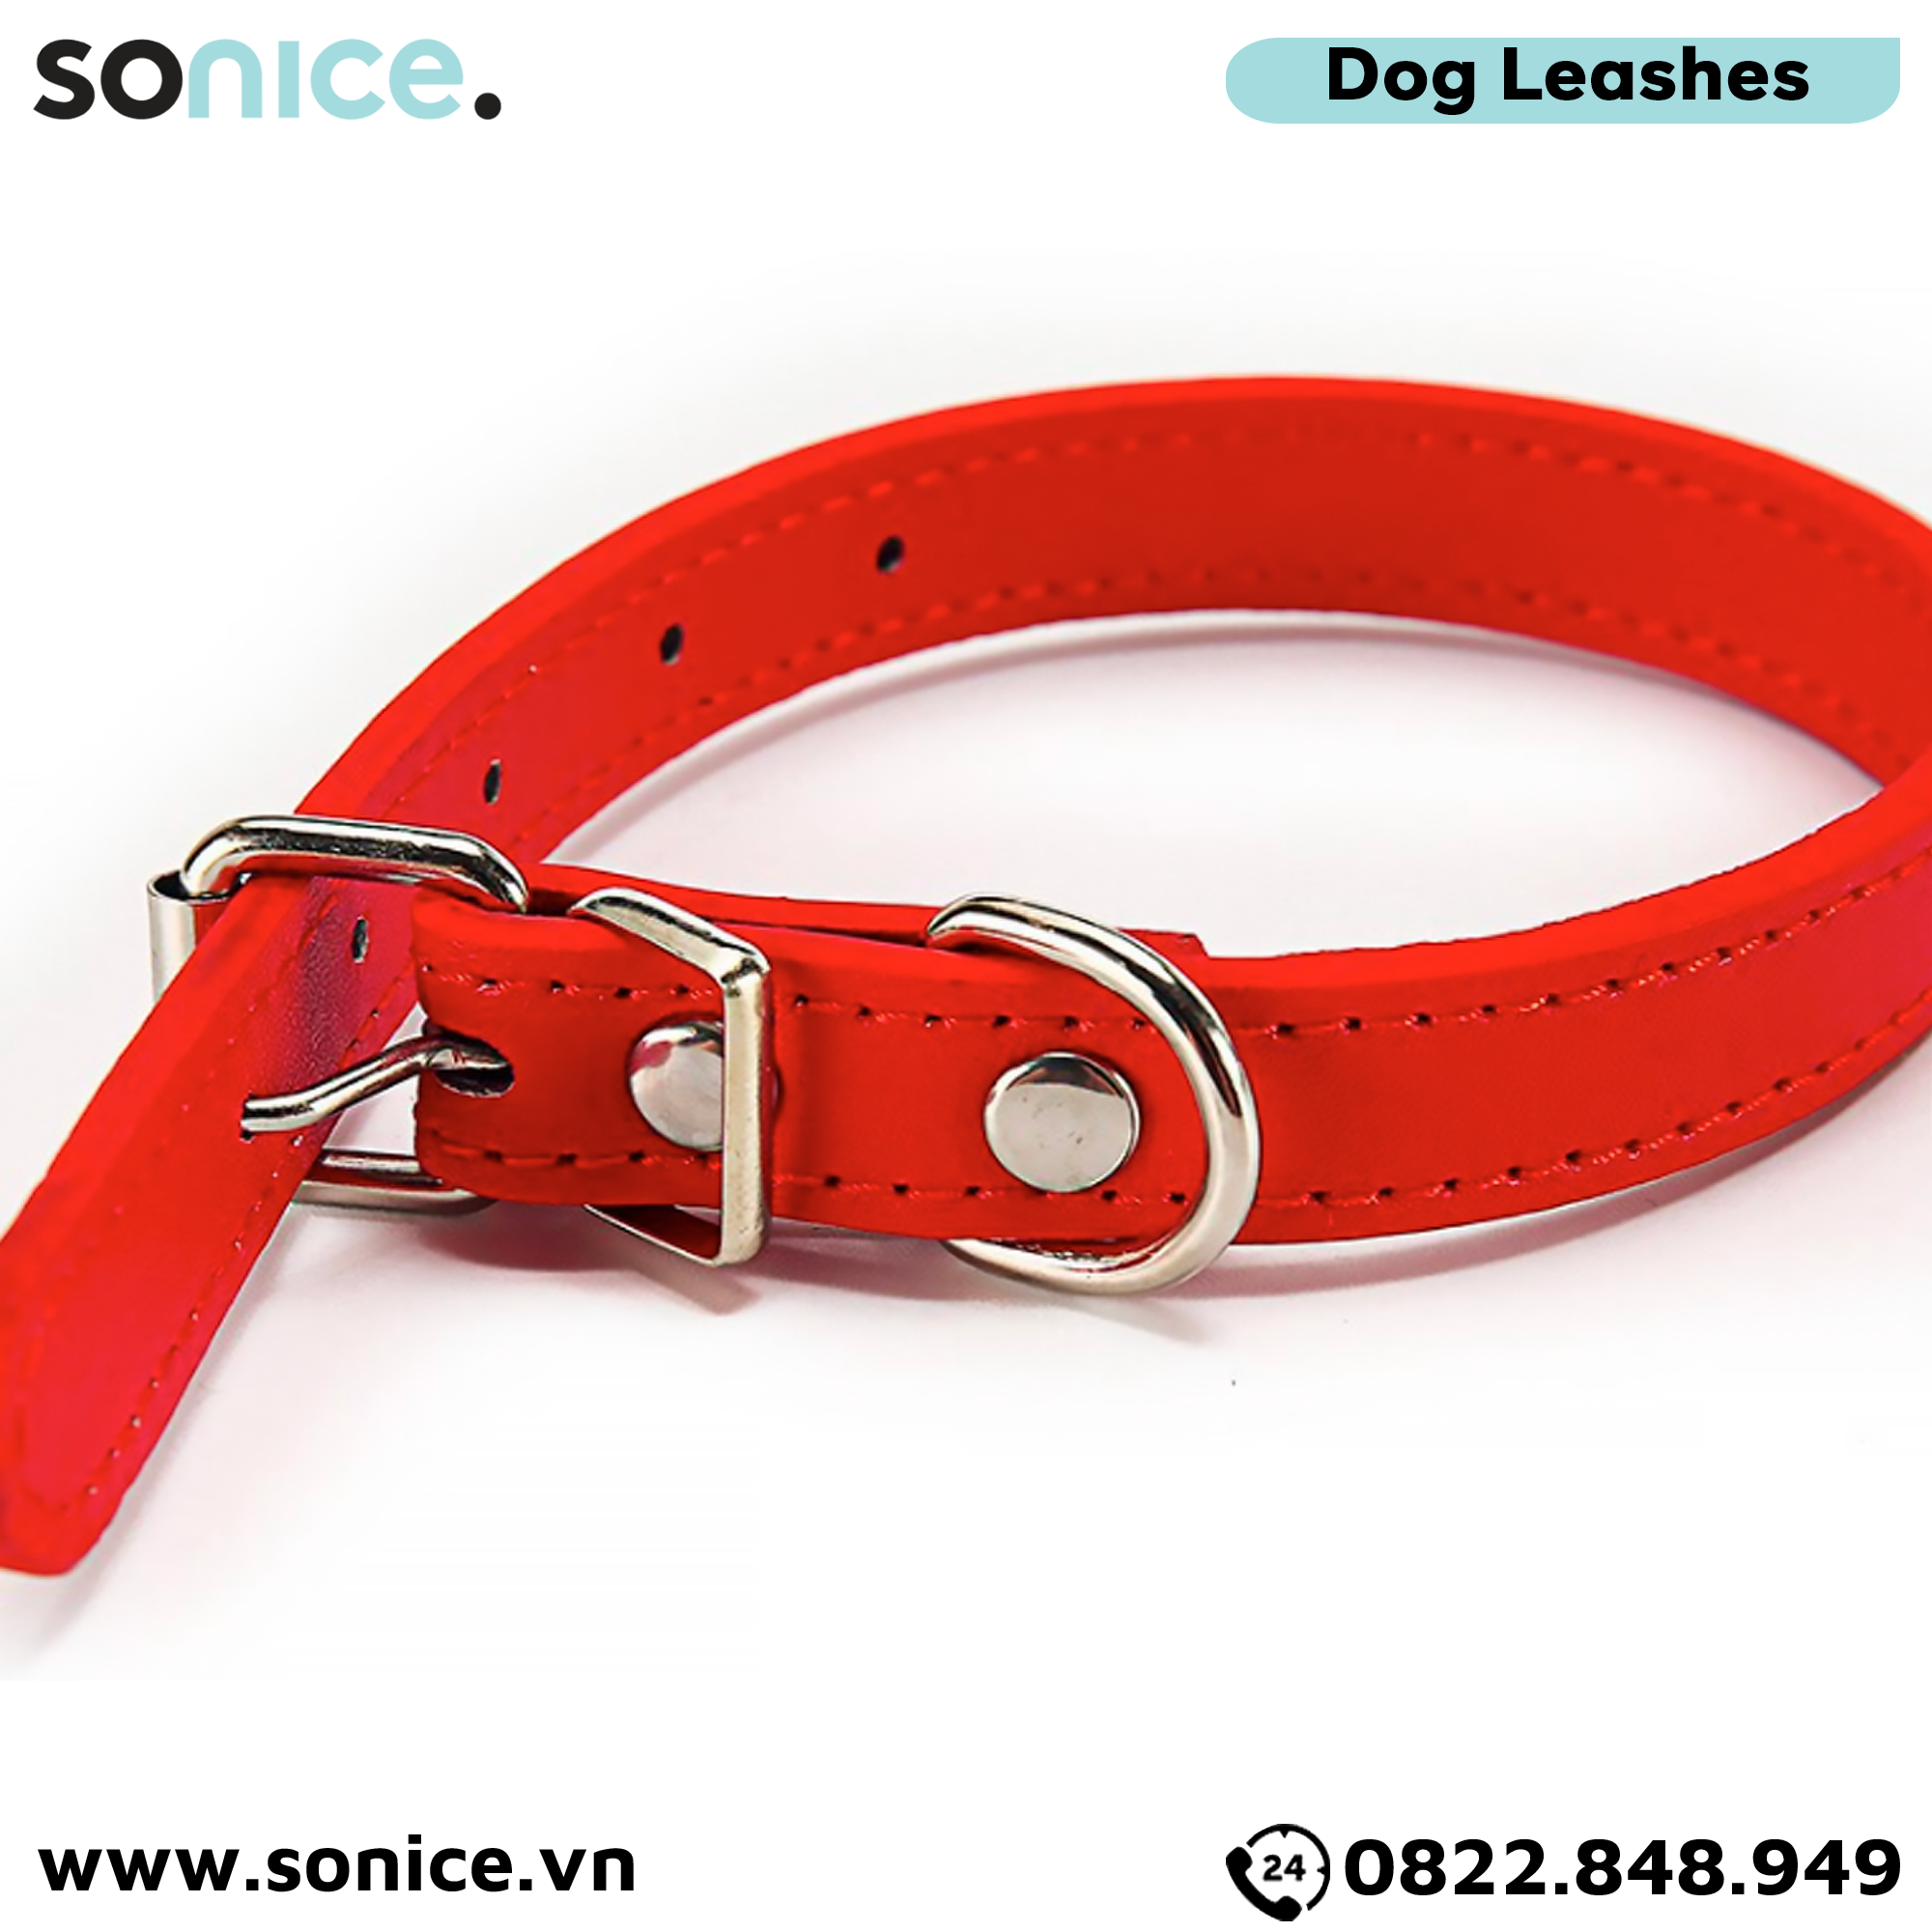  Vòng cổ da Petsmix Leather Collar size 5-20kg SONICE. 